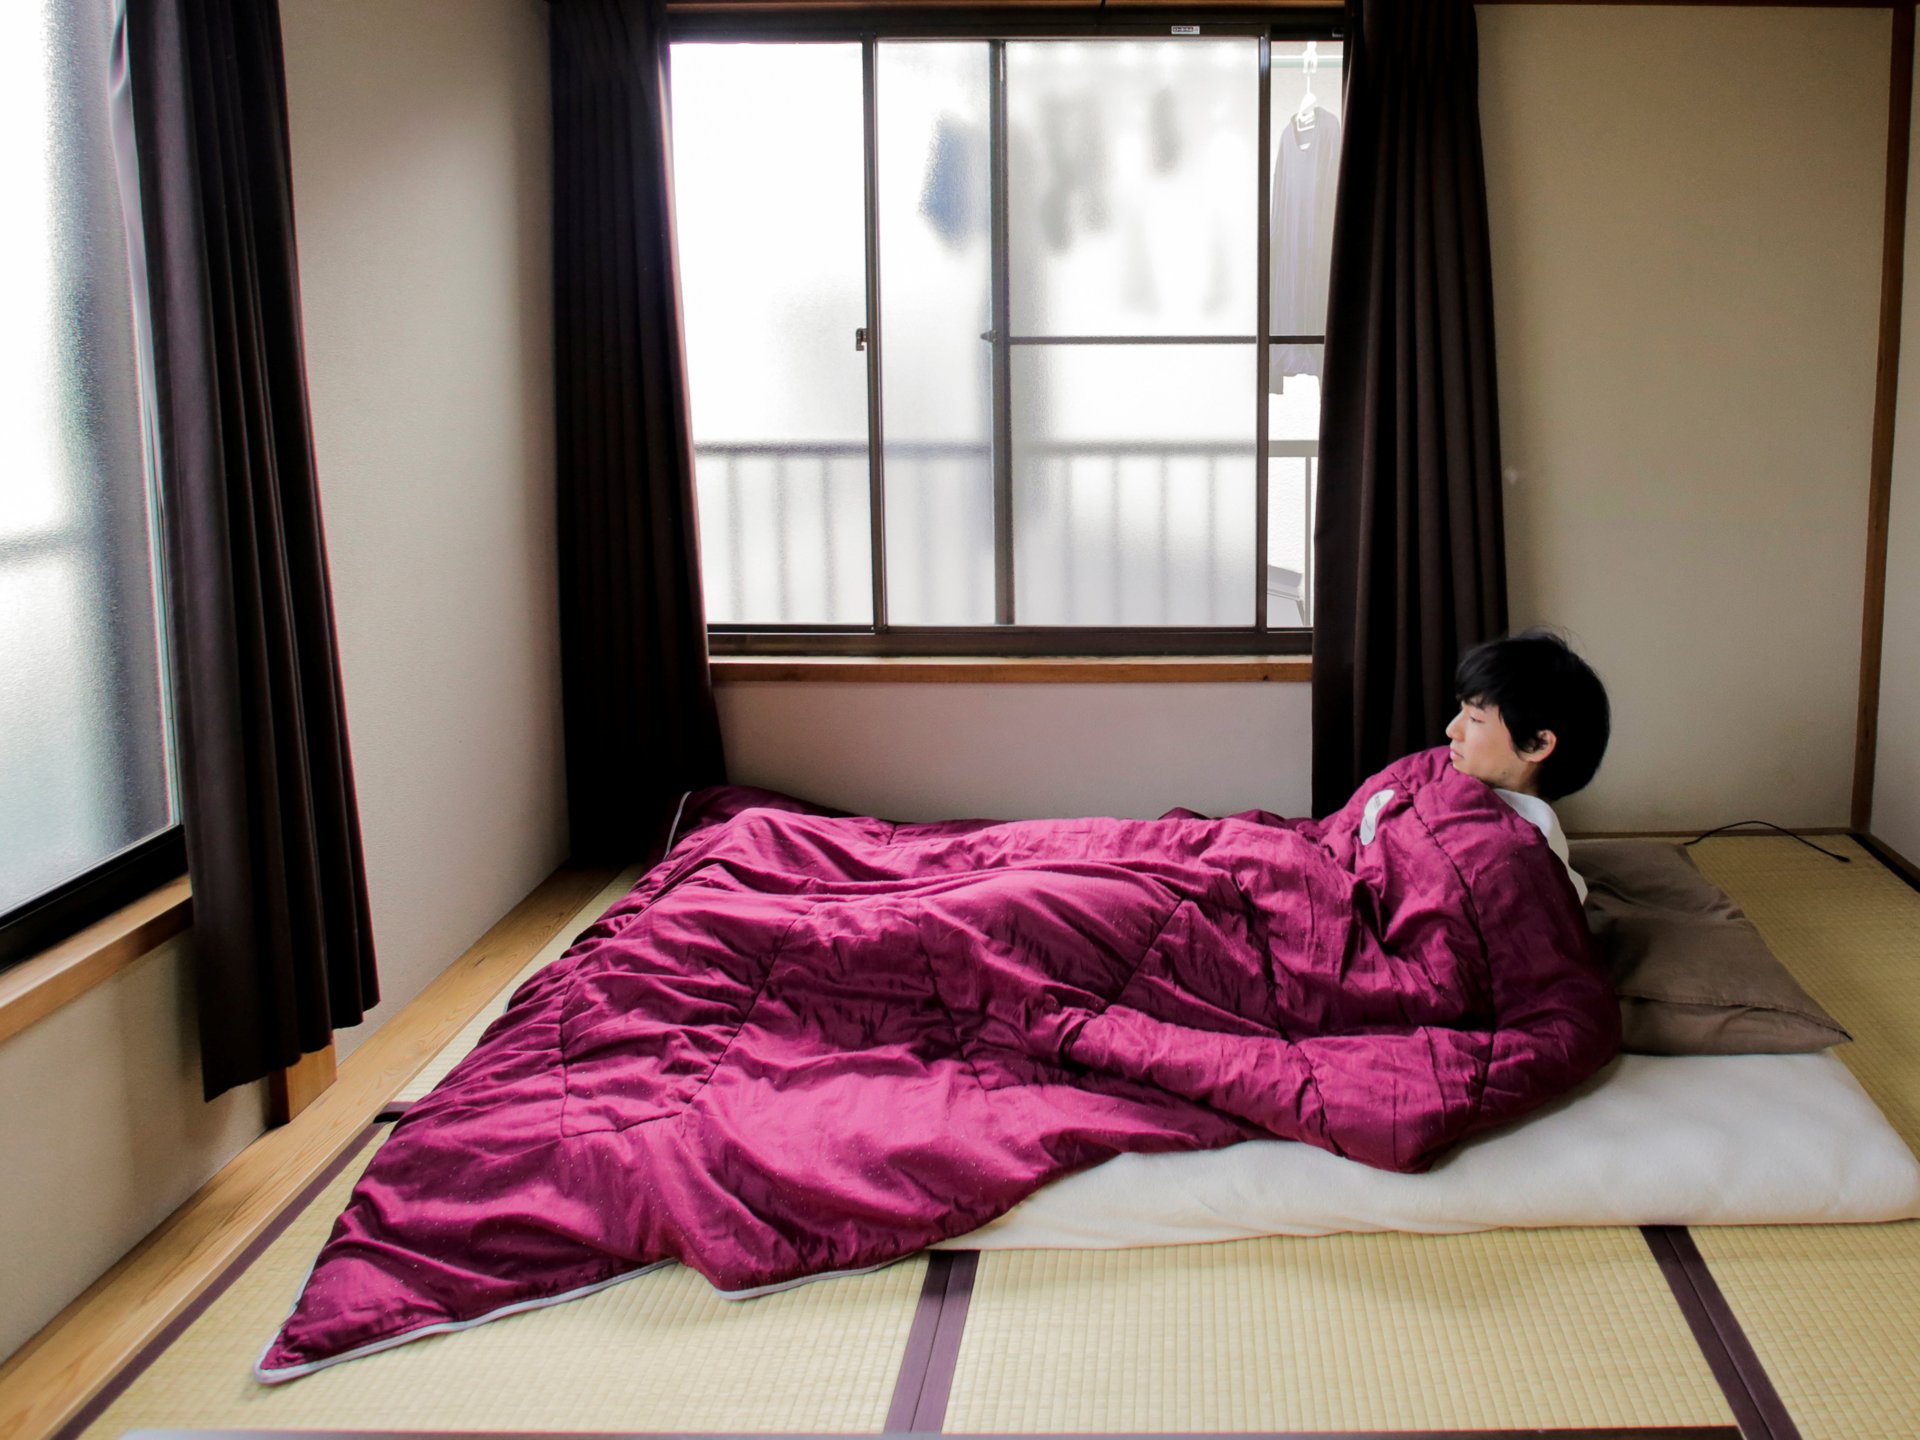 32 Bức ảnh giúp bạn hiểu rõ hơn về phong cách sống “tối giản” của người Nhật